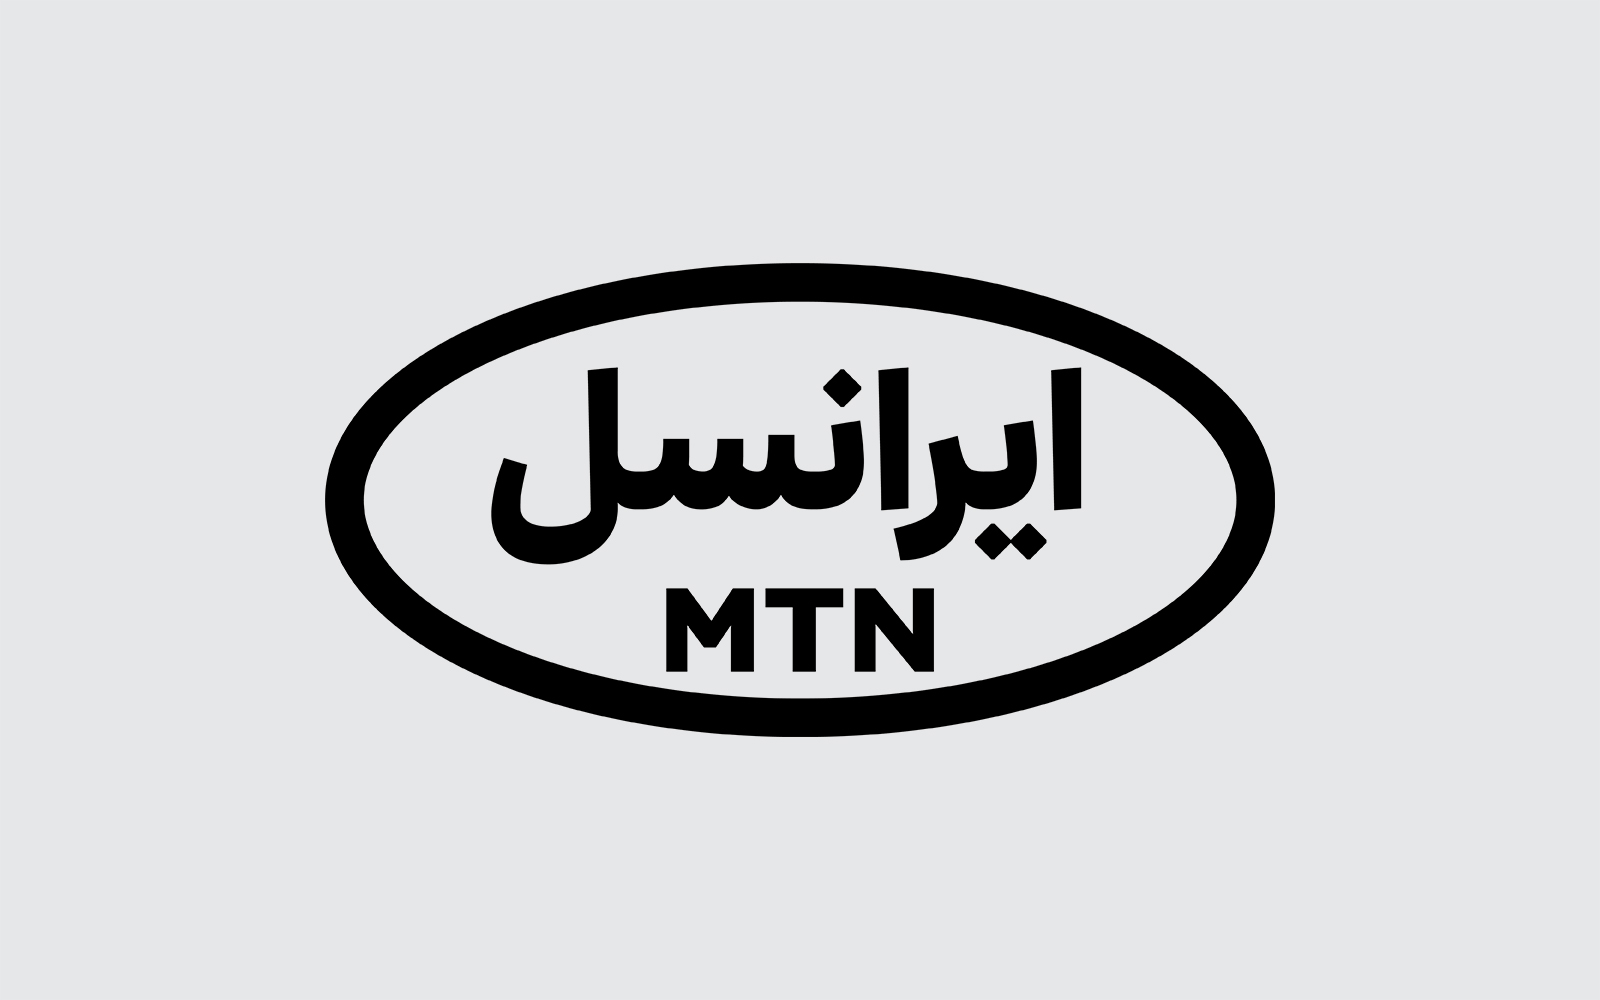 ایرانسل به مناسبت جشنواره یلدایی خود اعلام کرد / 20 گیگابت اینترنت رایگان با خرید اولین مودم از فروشگاه اینترنتی سازمانی ایرانسل